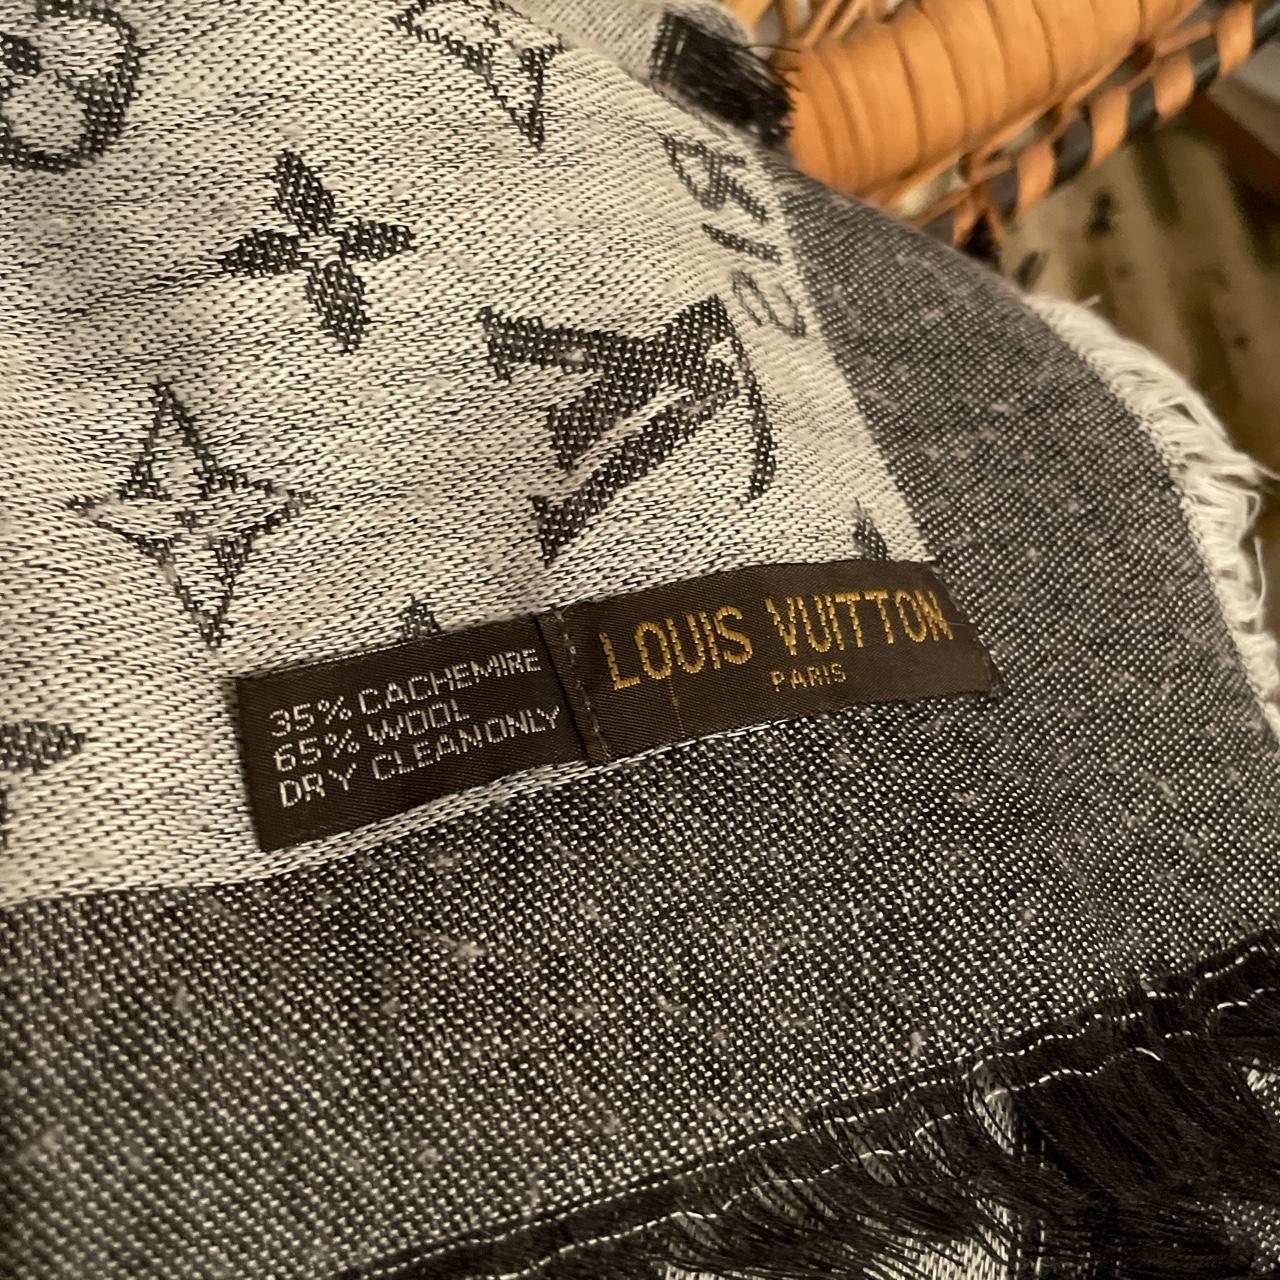 Louis Vuitton 100% Cashmere Scarf 100% - Depop